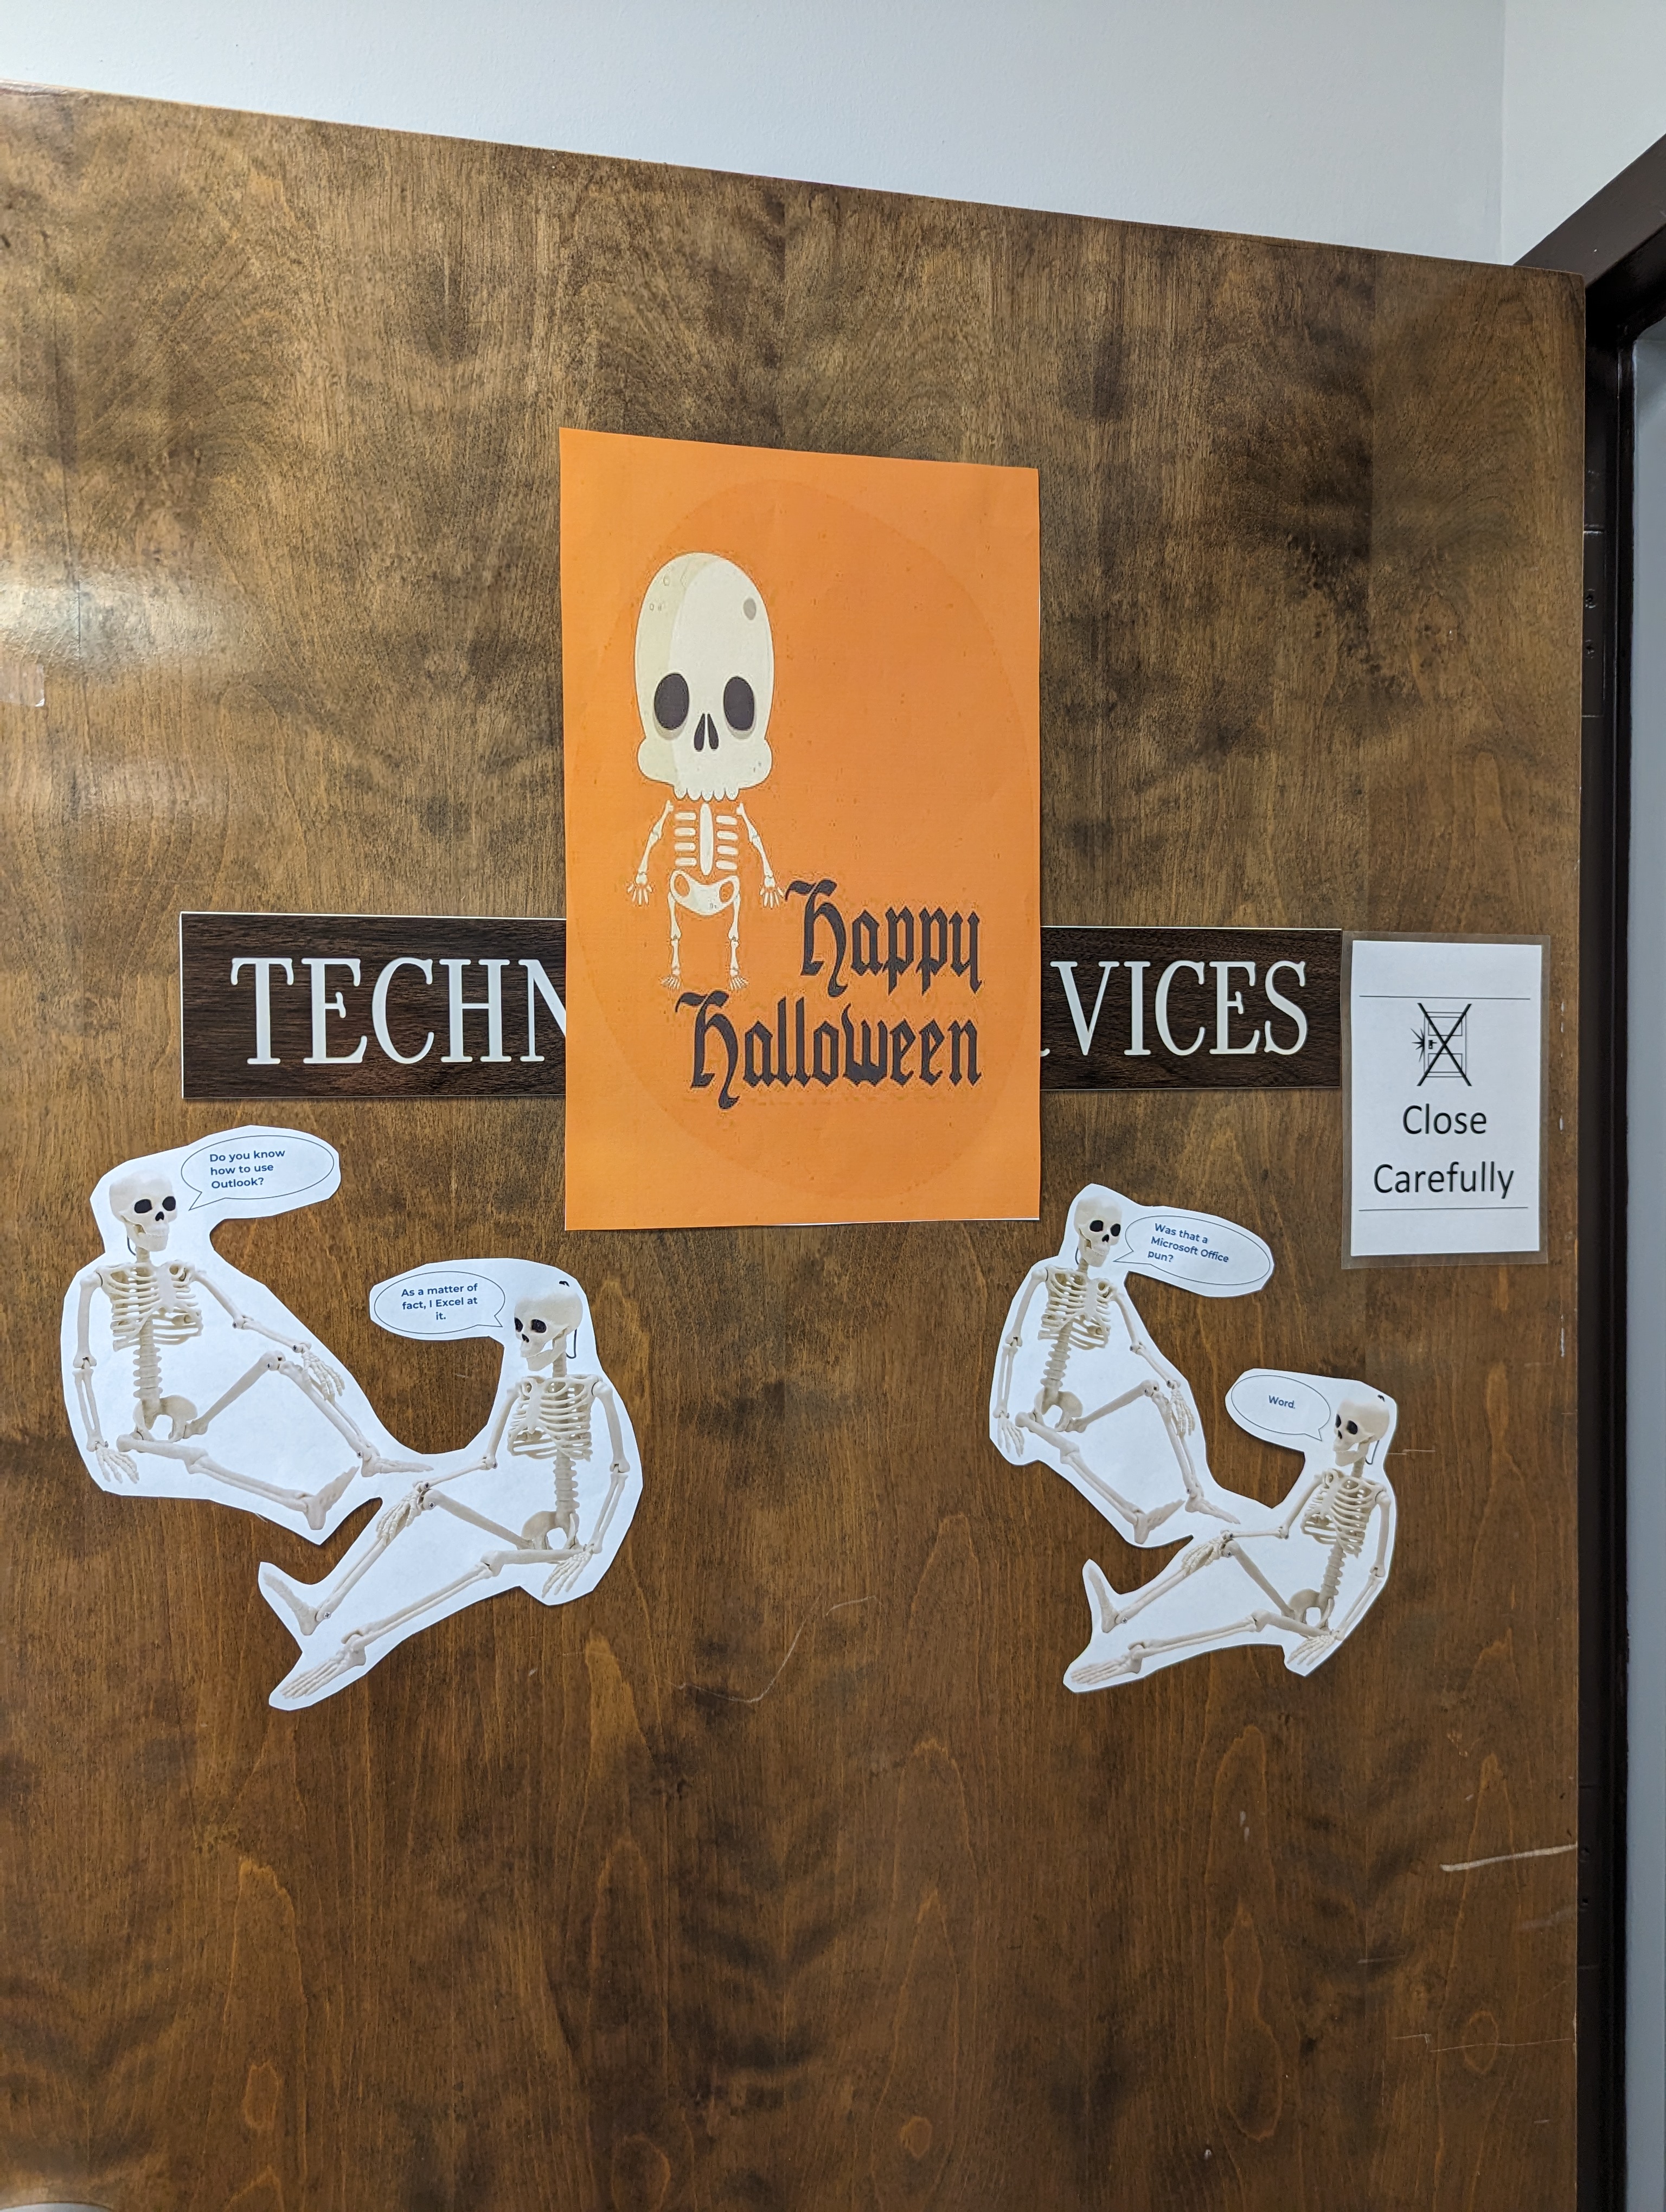 Halloween Decorations in GCSC's ITS Building. Skeletons on a door